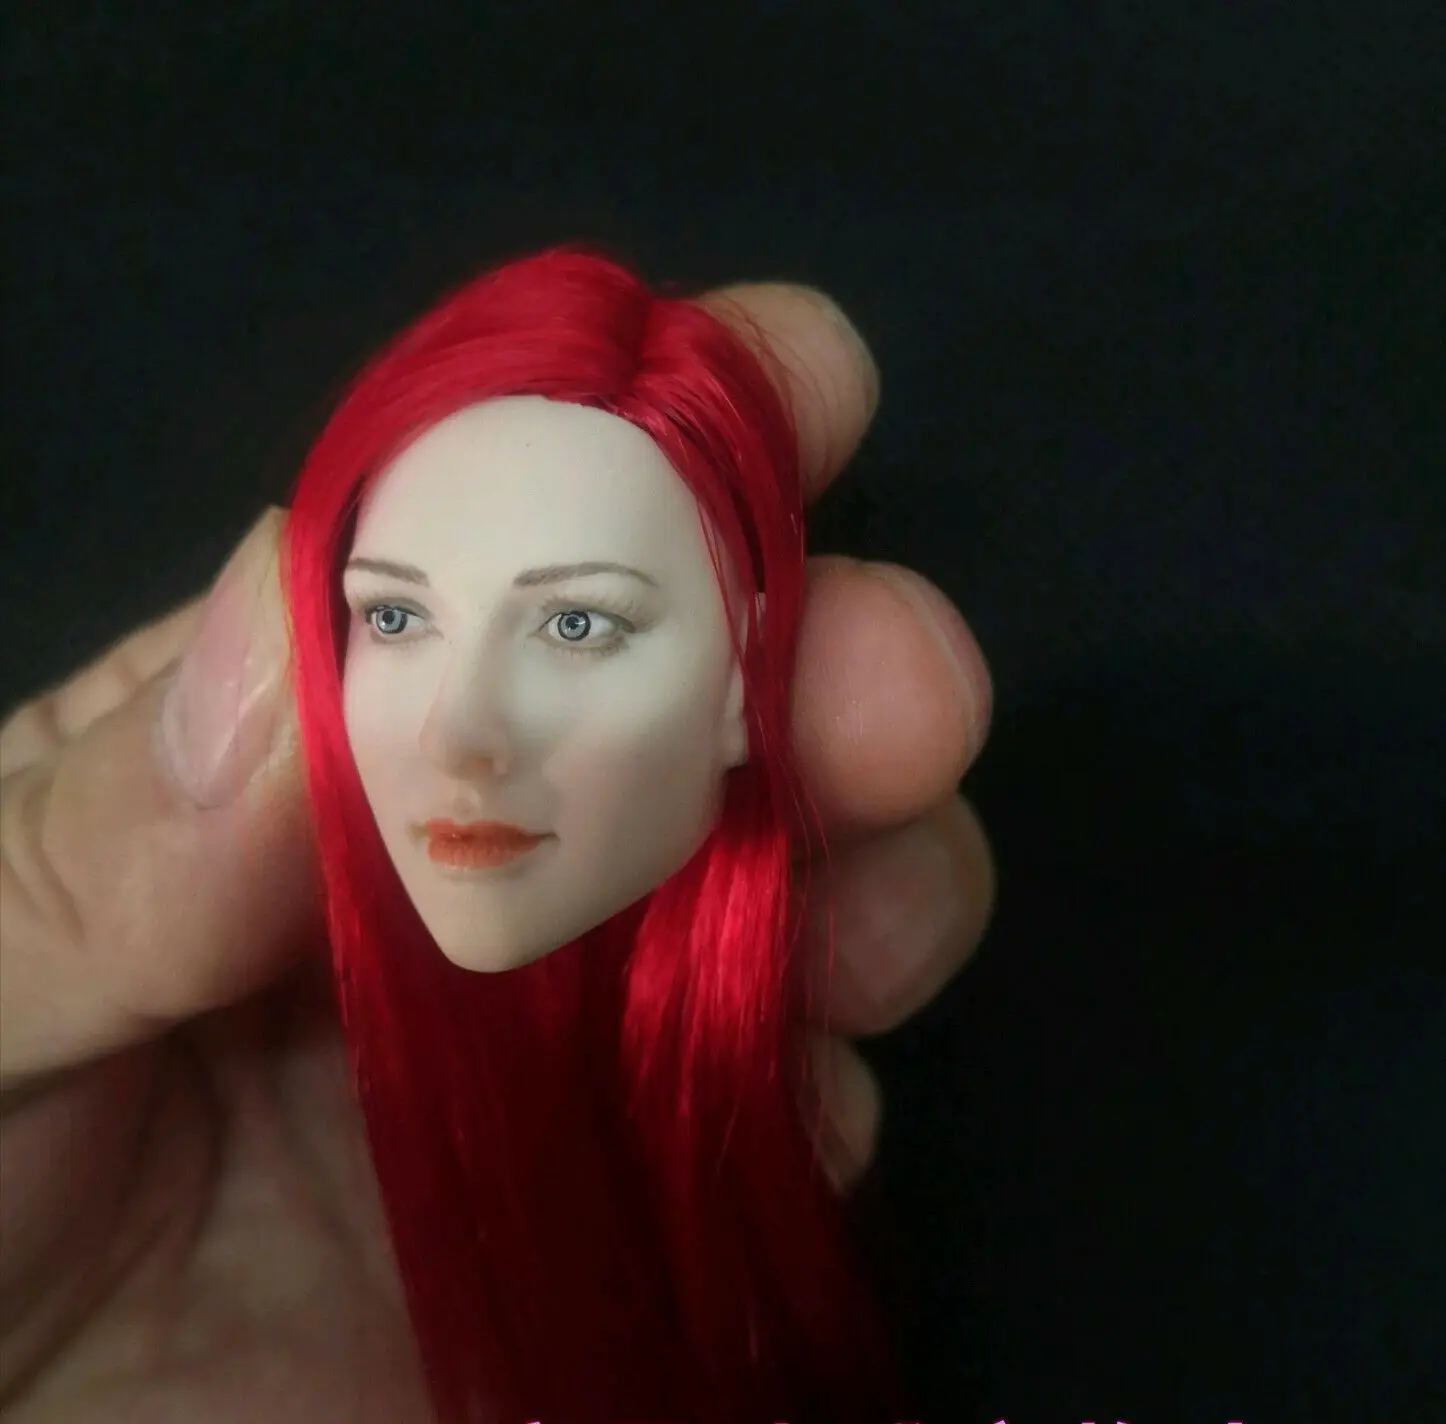 

Масштаб 1/6, красные волосы, бледная кожа, голова девушки, скульптура, резьба, модель, подходит для 12-дюймовой экшн-фигурки, женское тело